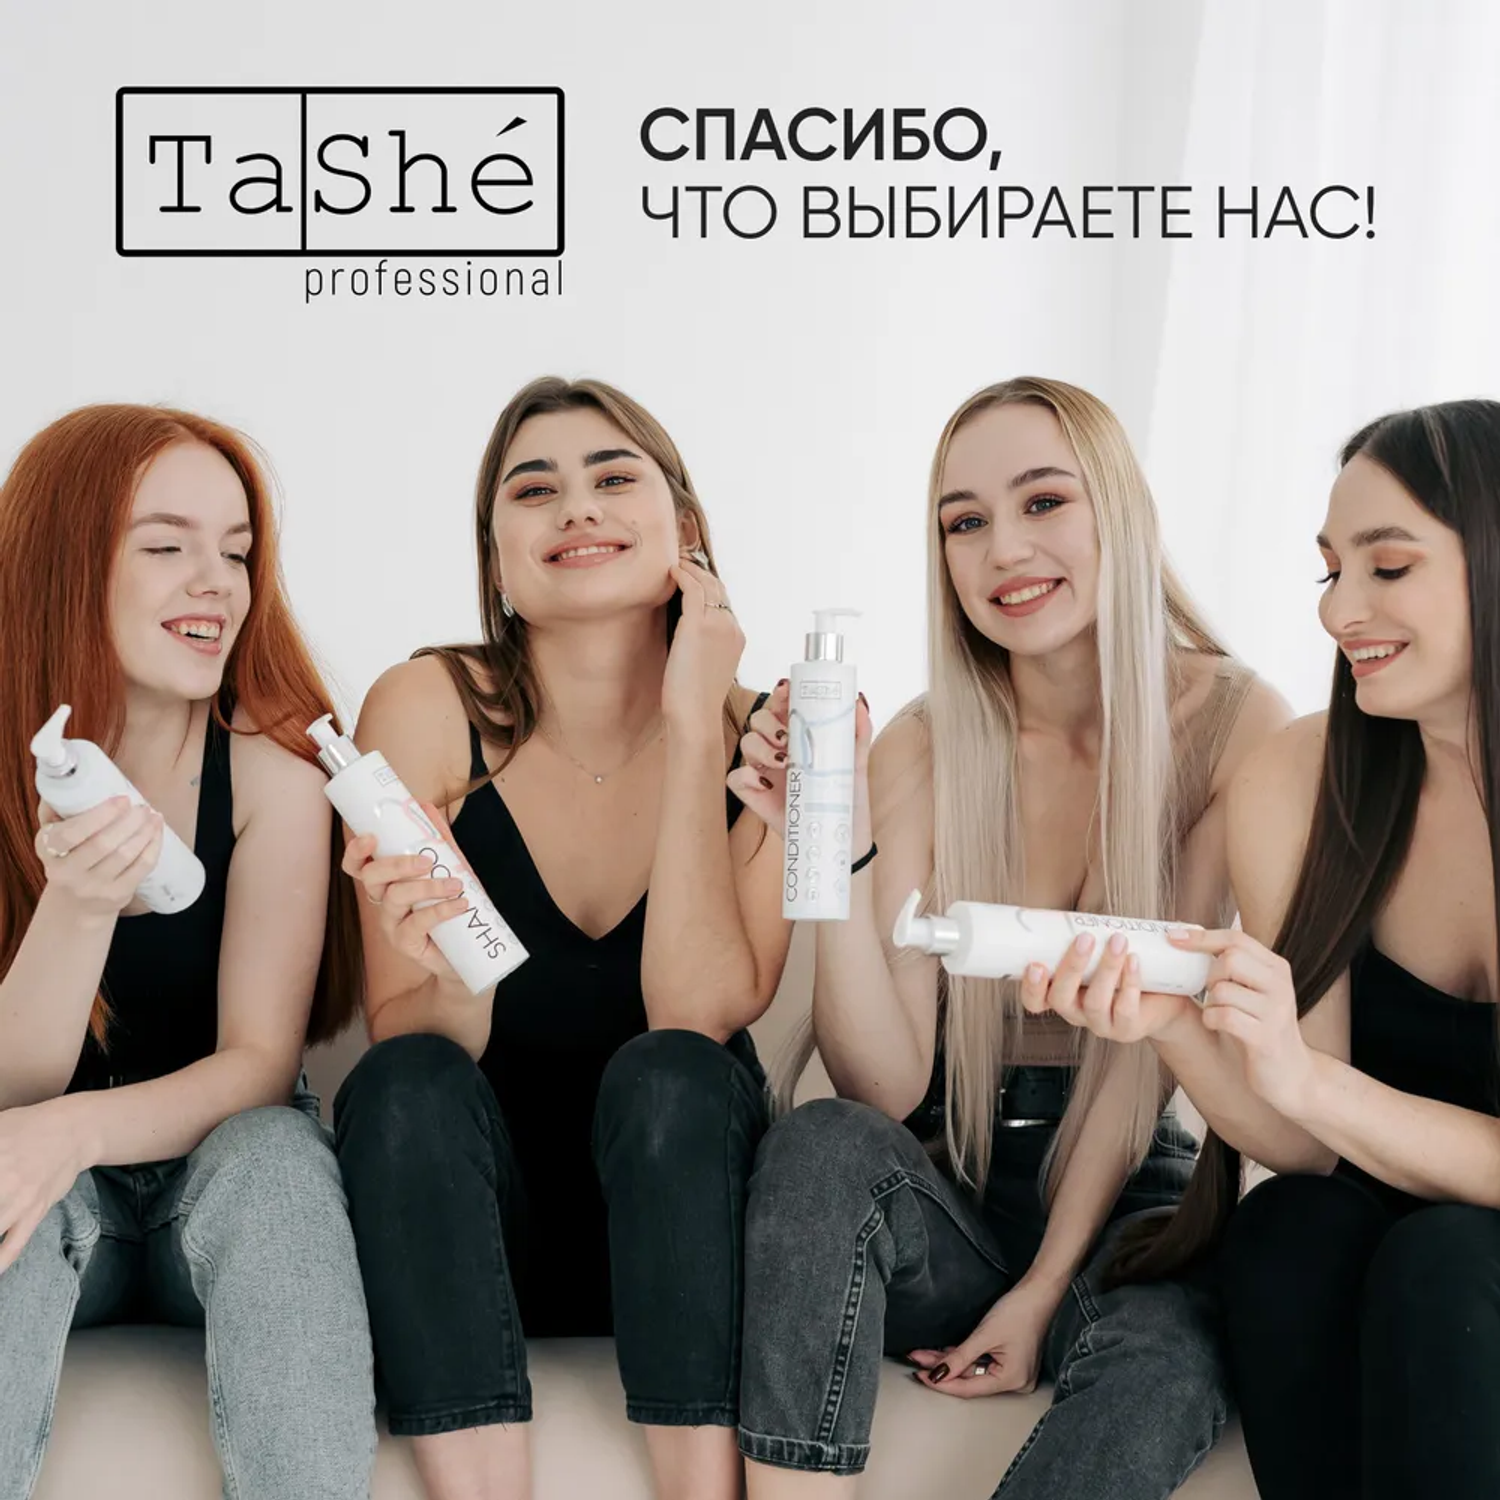 Шампунь для волос женский Tashe Professional профессиональный для ежедневного ухода 300 мл - фото 9